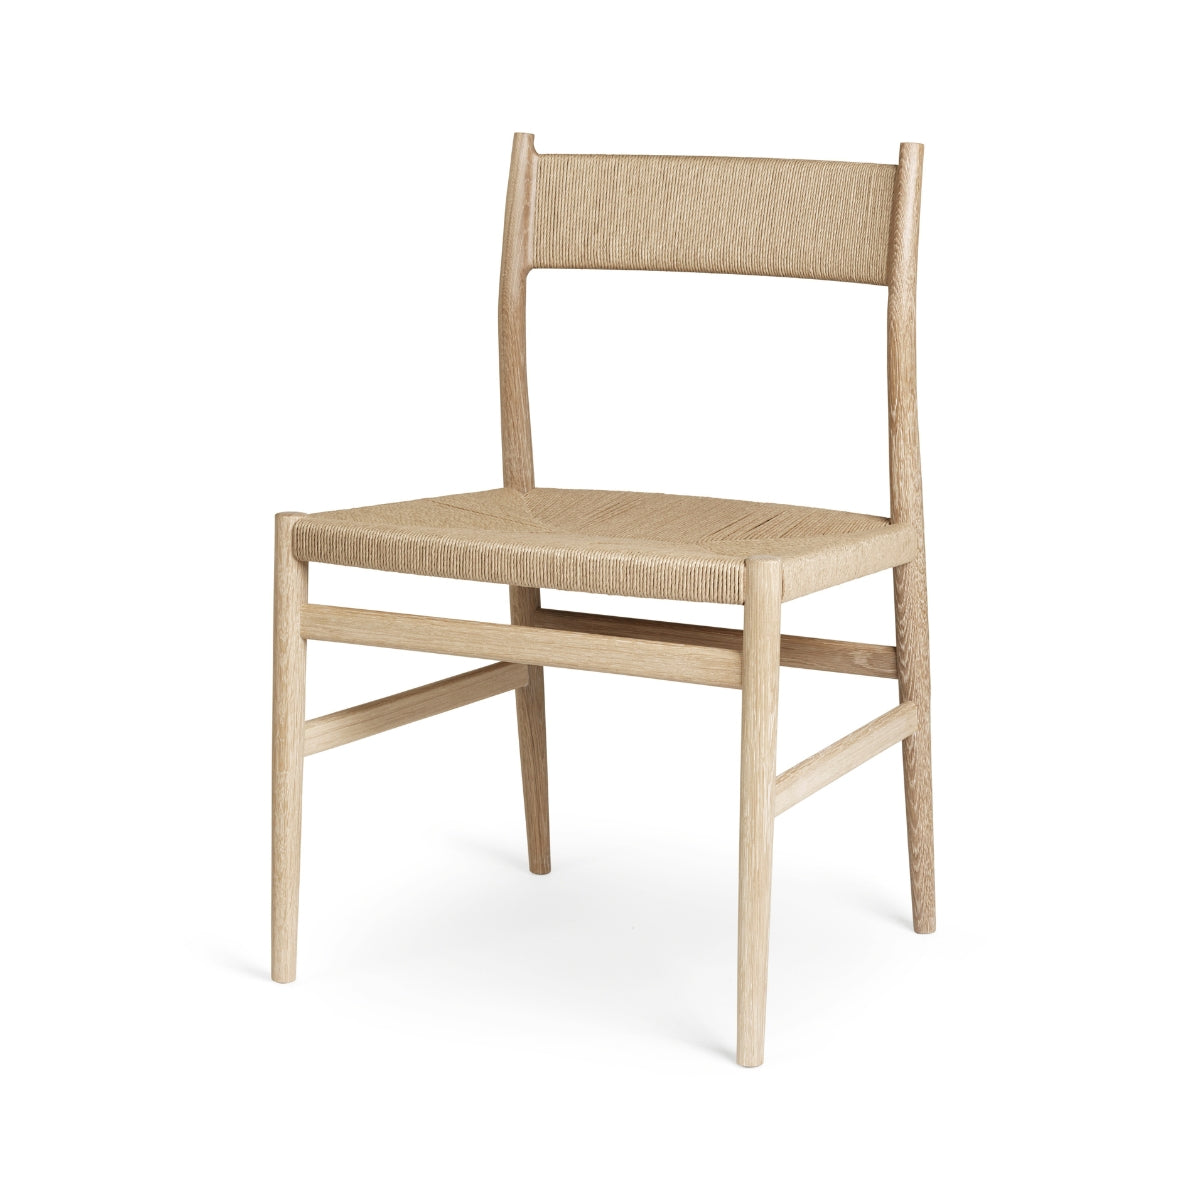 Brdr. Krüger | Arv Chair Without Armrest, Weaved Backrest - Weaved Seat